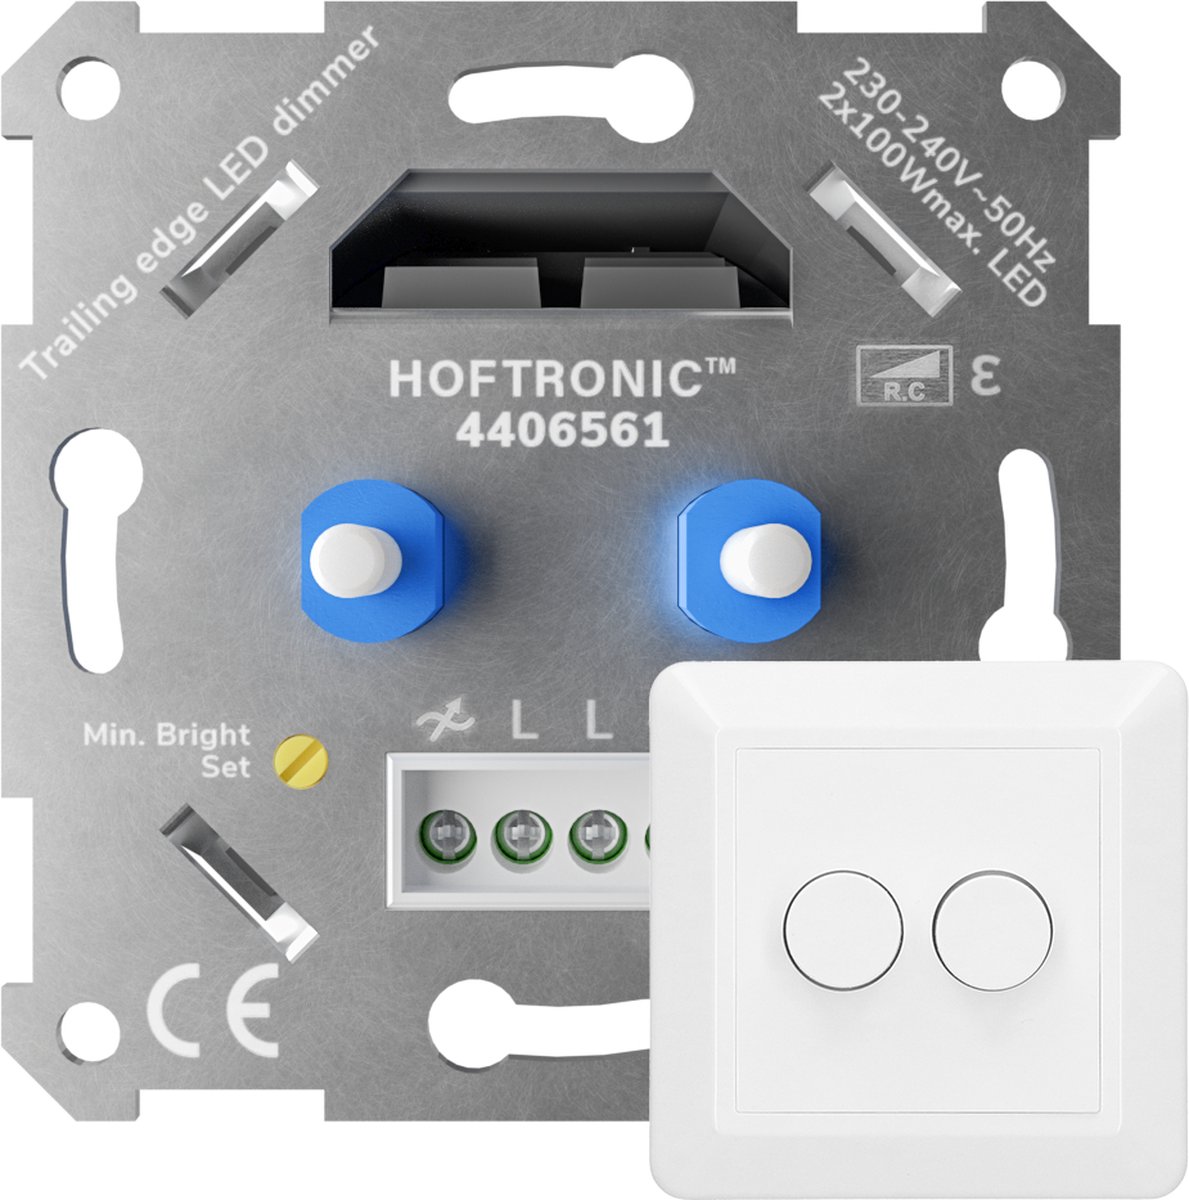 HOFTRONIC - LED duo dimmer - Fase afsnijding - Maximale belasting 2x100 Watt - Met afdekraam en knoppen - HOFTRONIC